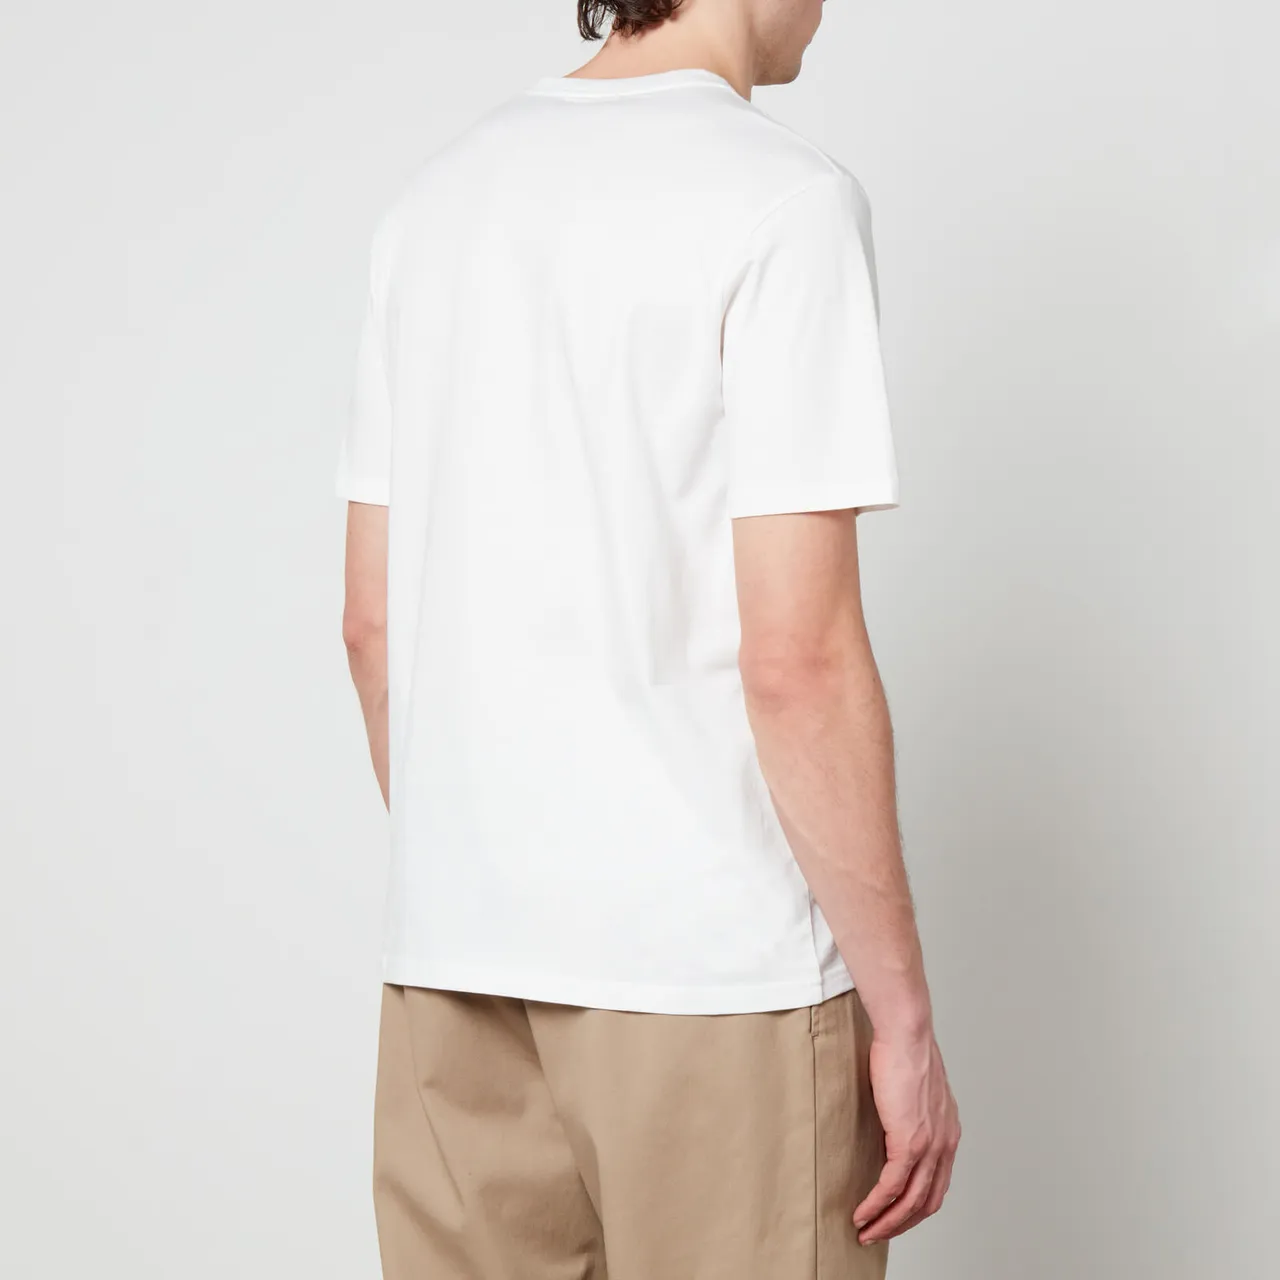 Carhartt WIP Pocket Cotton T-Shirt